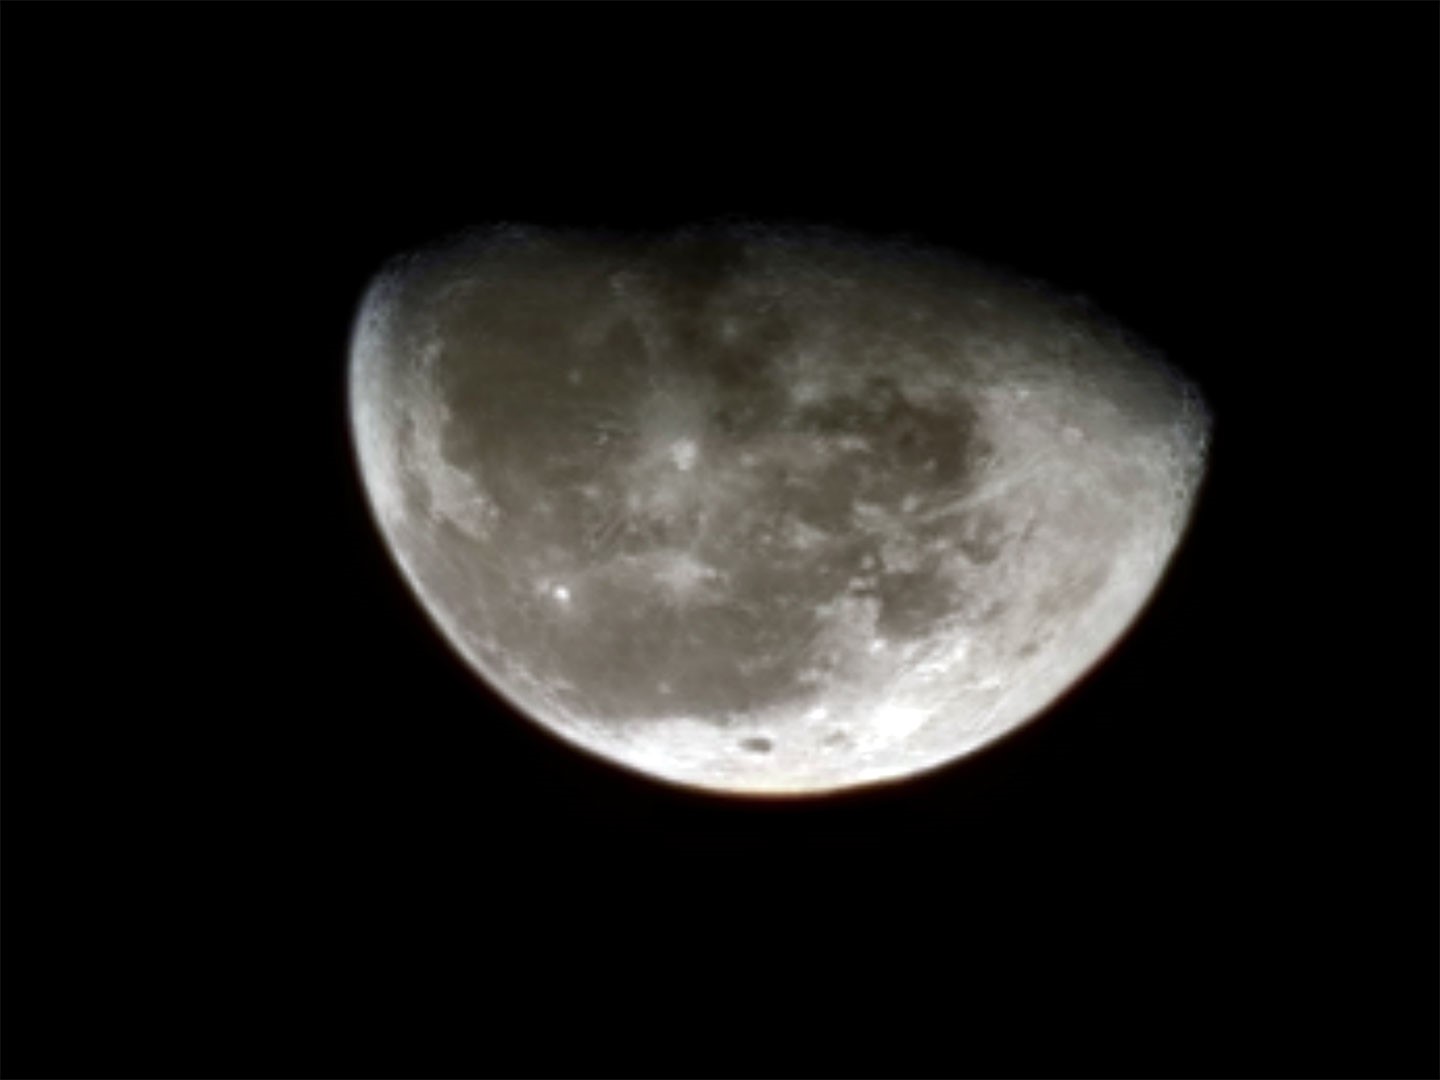 Galaxy S23 Ultra 的 100x 數位變焦能輕鬆「打」下美麗清晰的月球照。